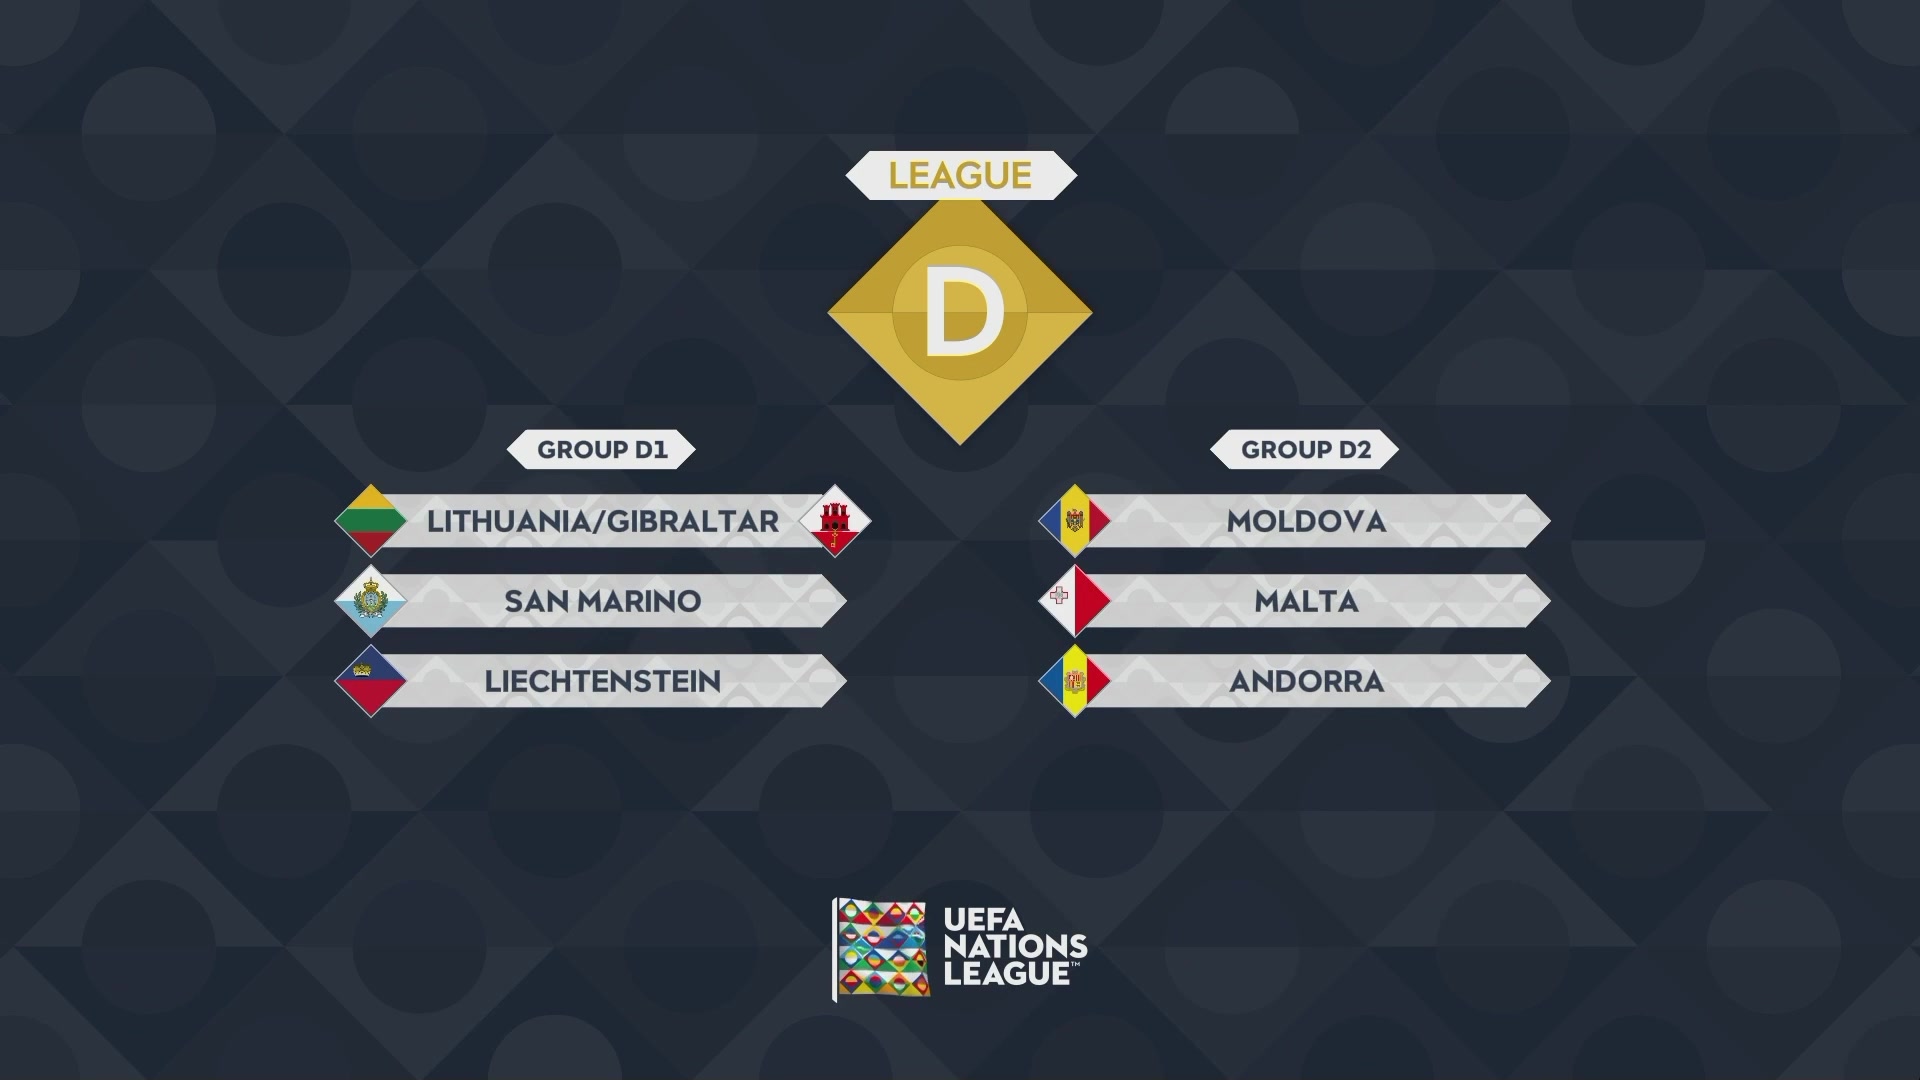 欧国联ABCD级分组情况，意大利比利时法国同组英格兰掉入B级别